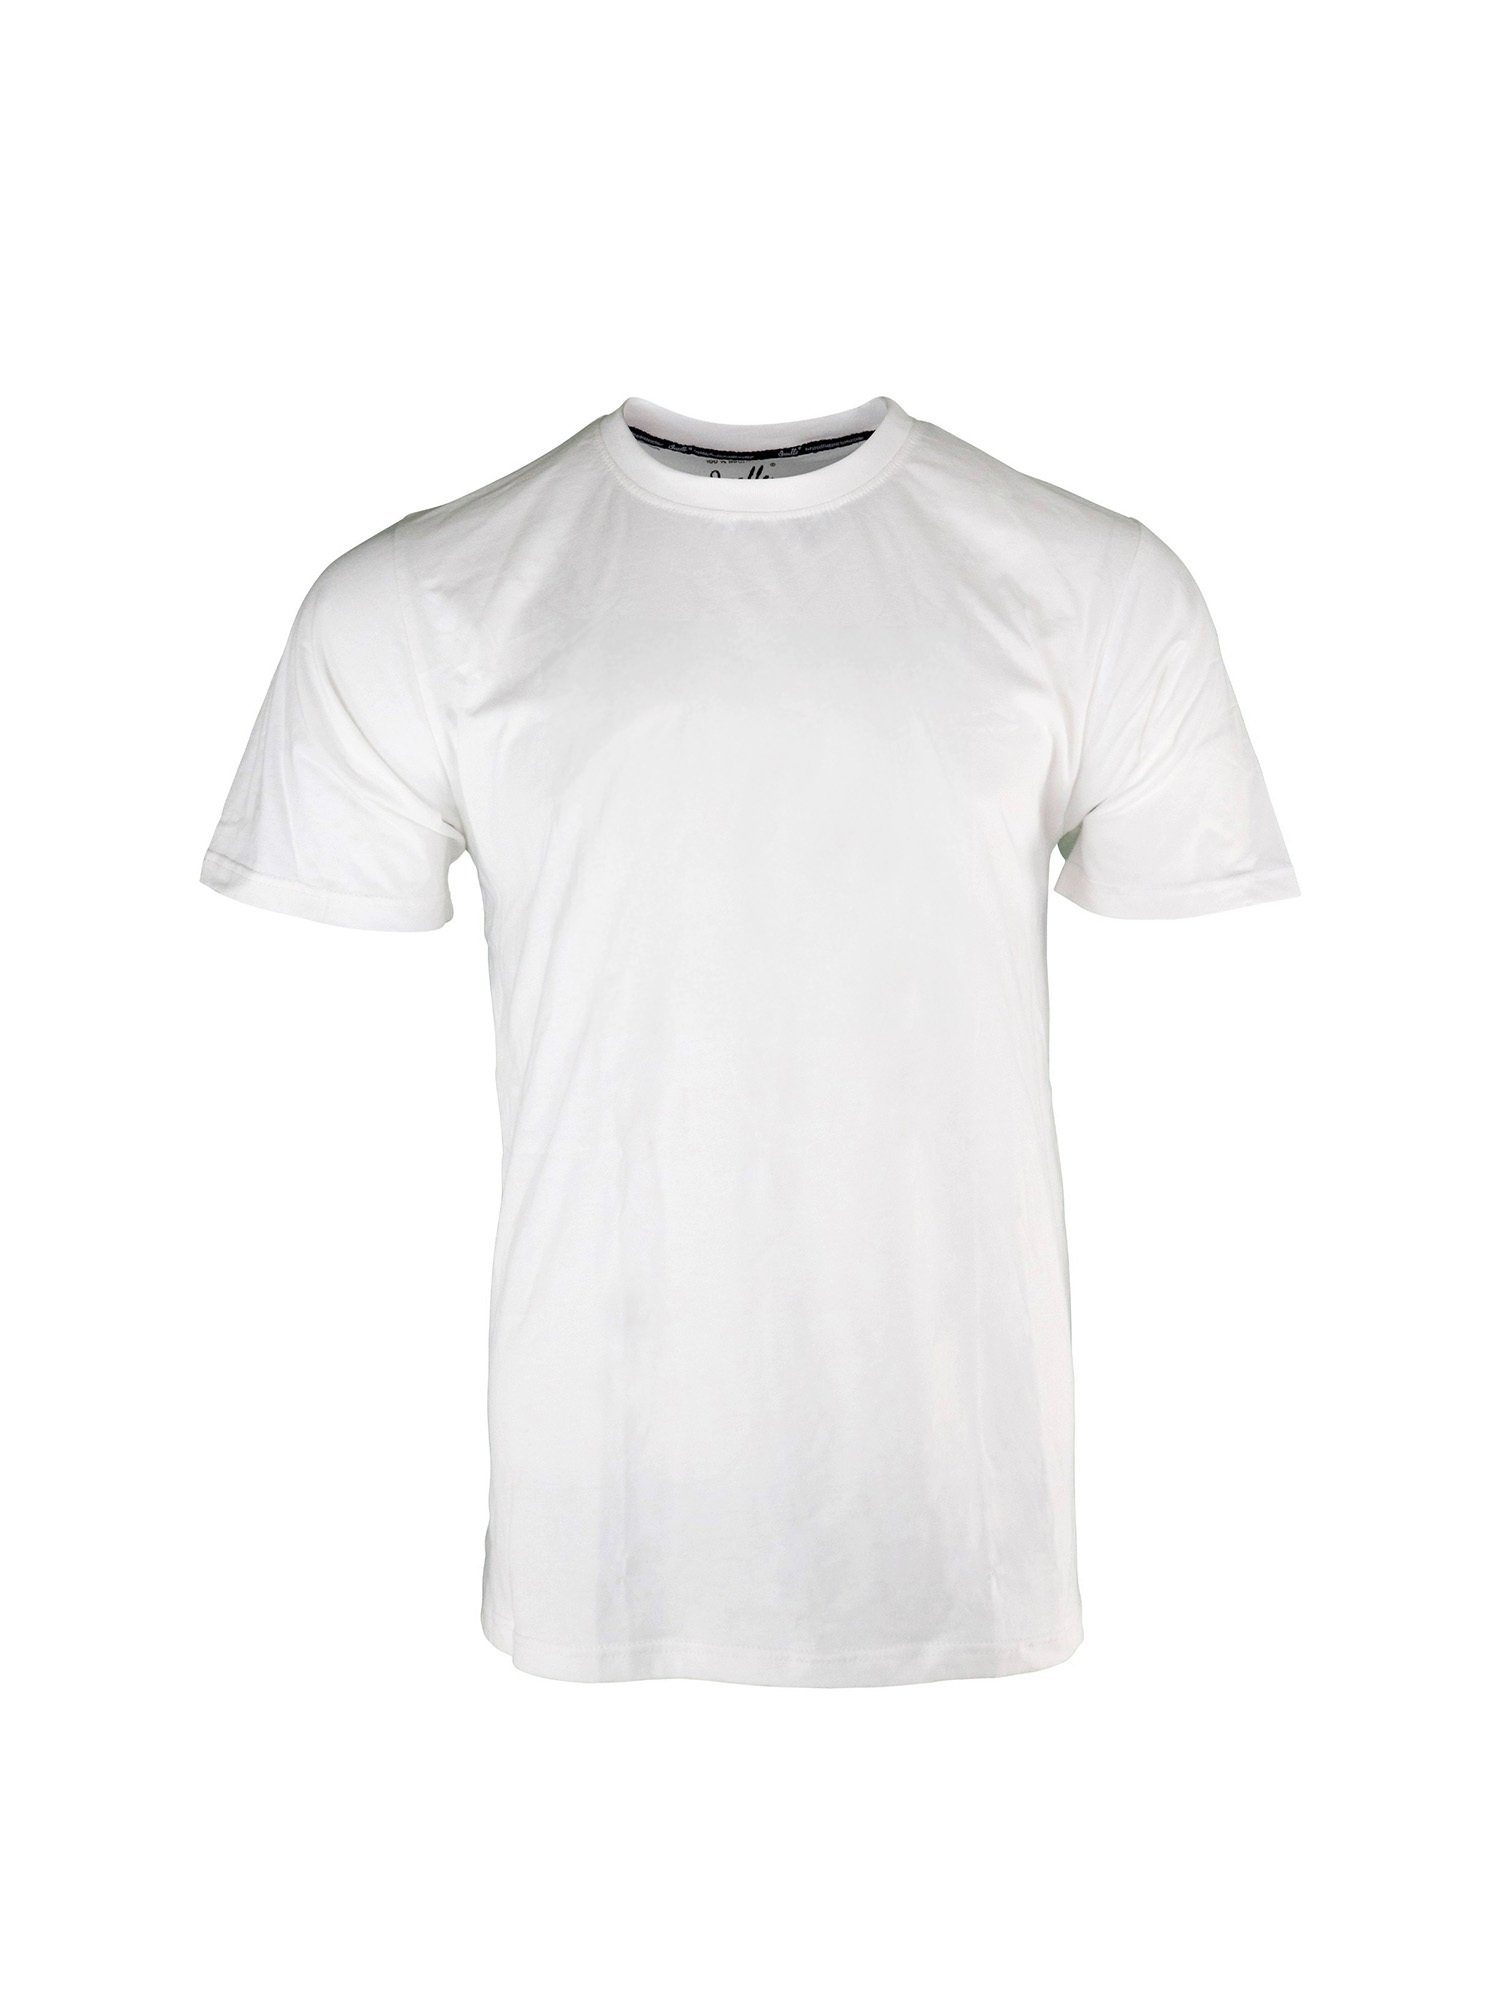 Qualle T-Shirt Basic Respekt Unisex, aus Baumwolle